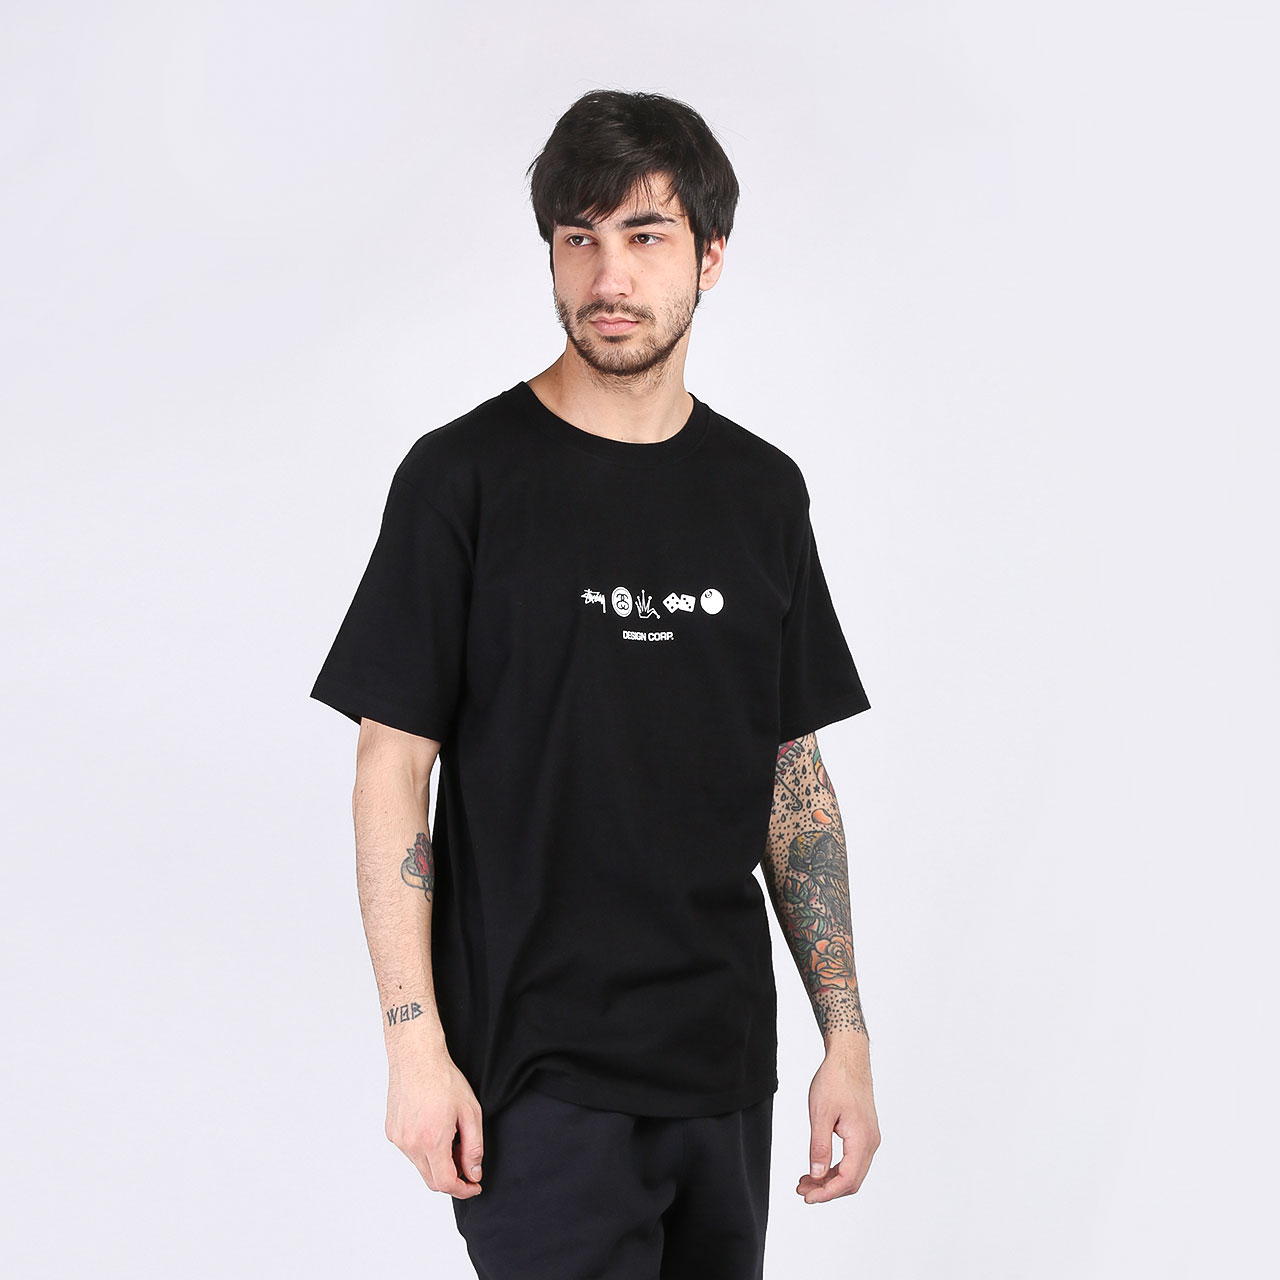 мужская черная футболка Stussy T-SHIRT GLOBAL DESIGN 1904506-black - цена, описание, фото 3